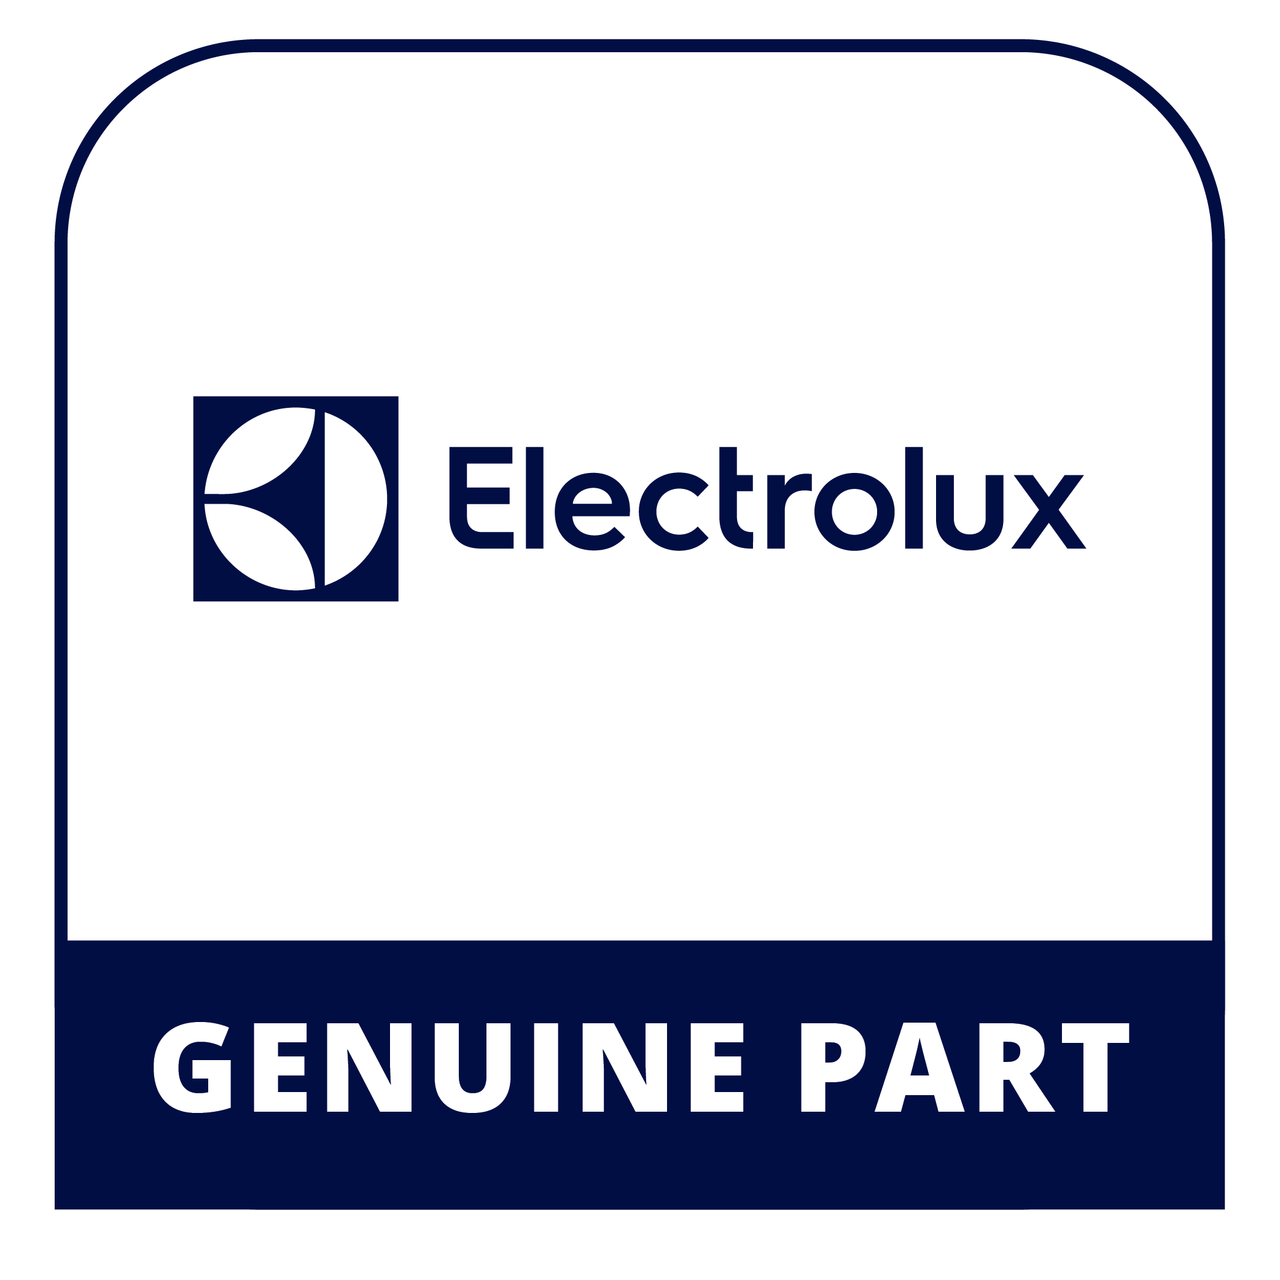 Frigidaire - Electrolux 316282997 Dsp Maintop Assem. - Genuine Electrolux Part